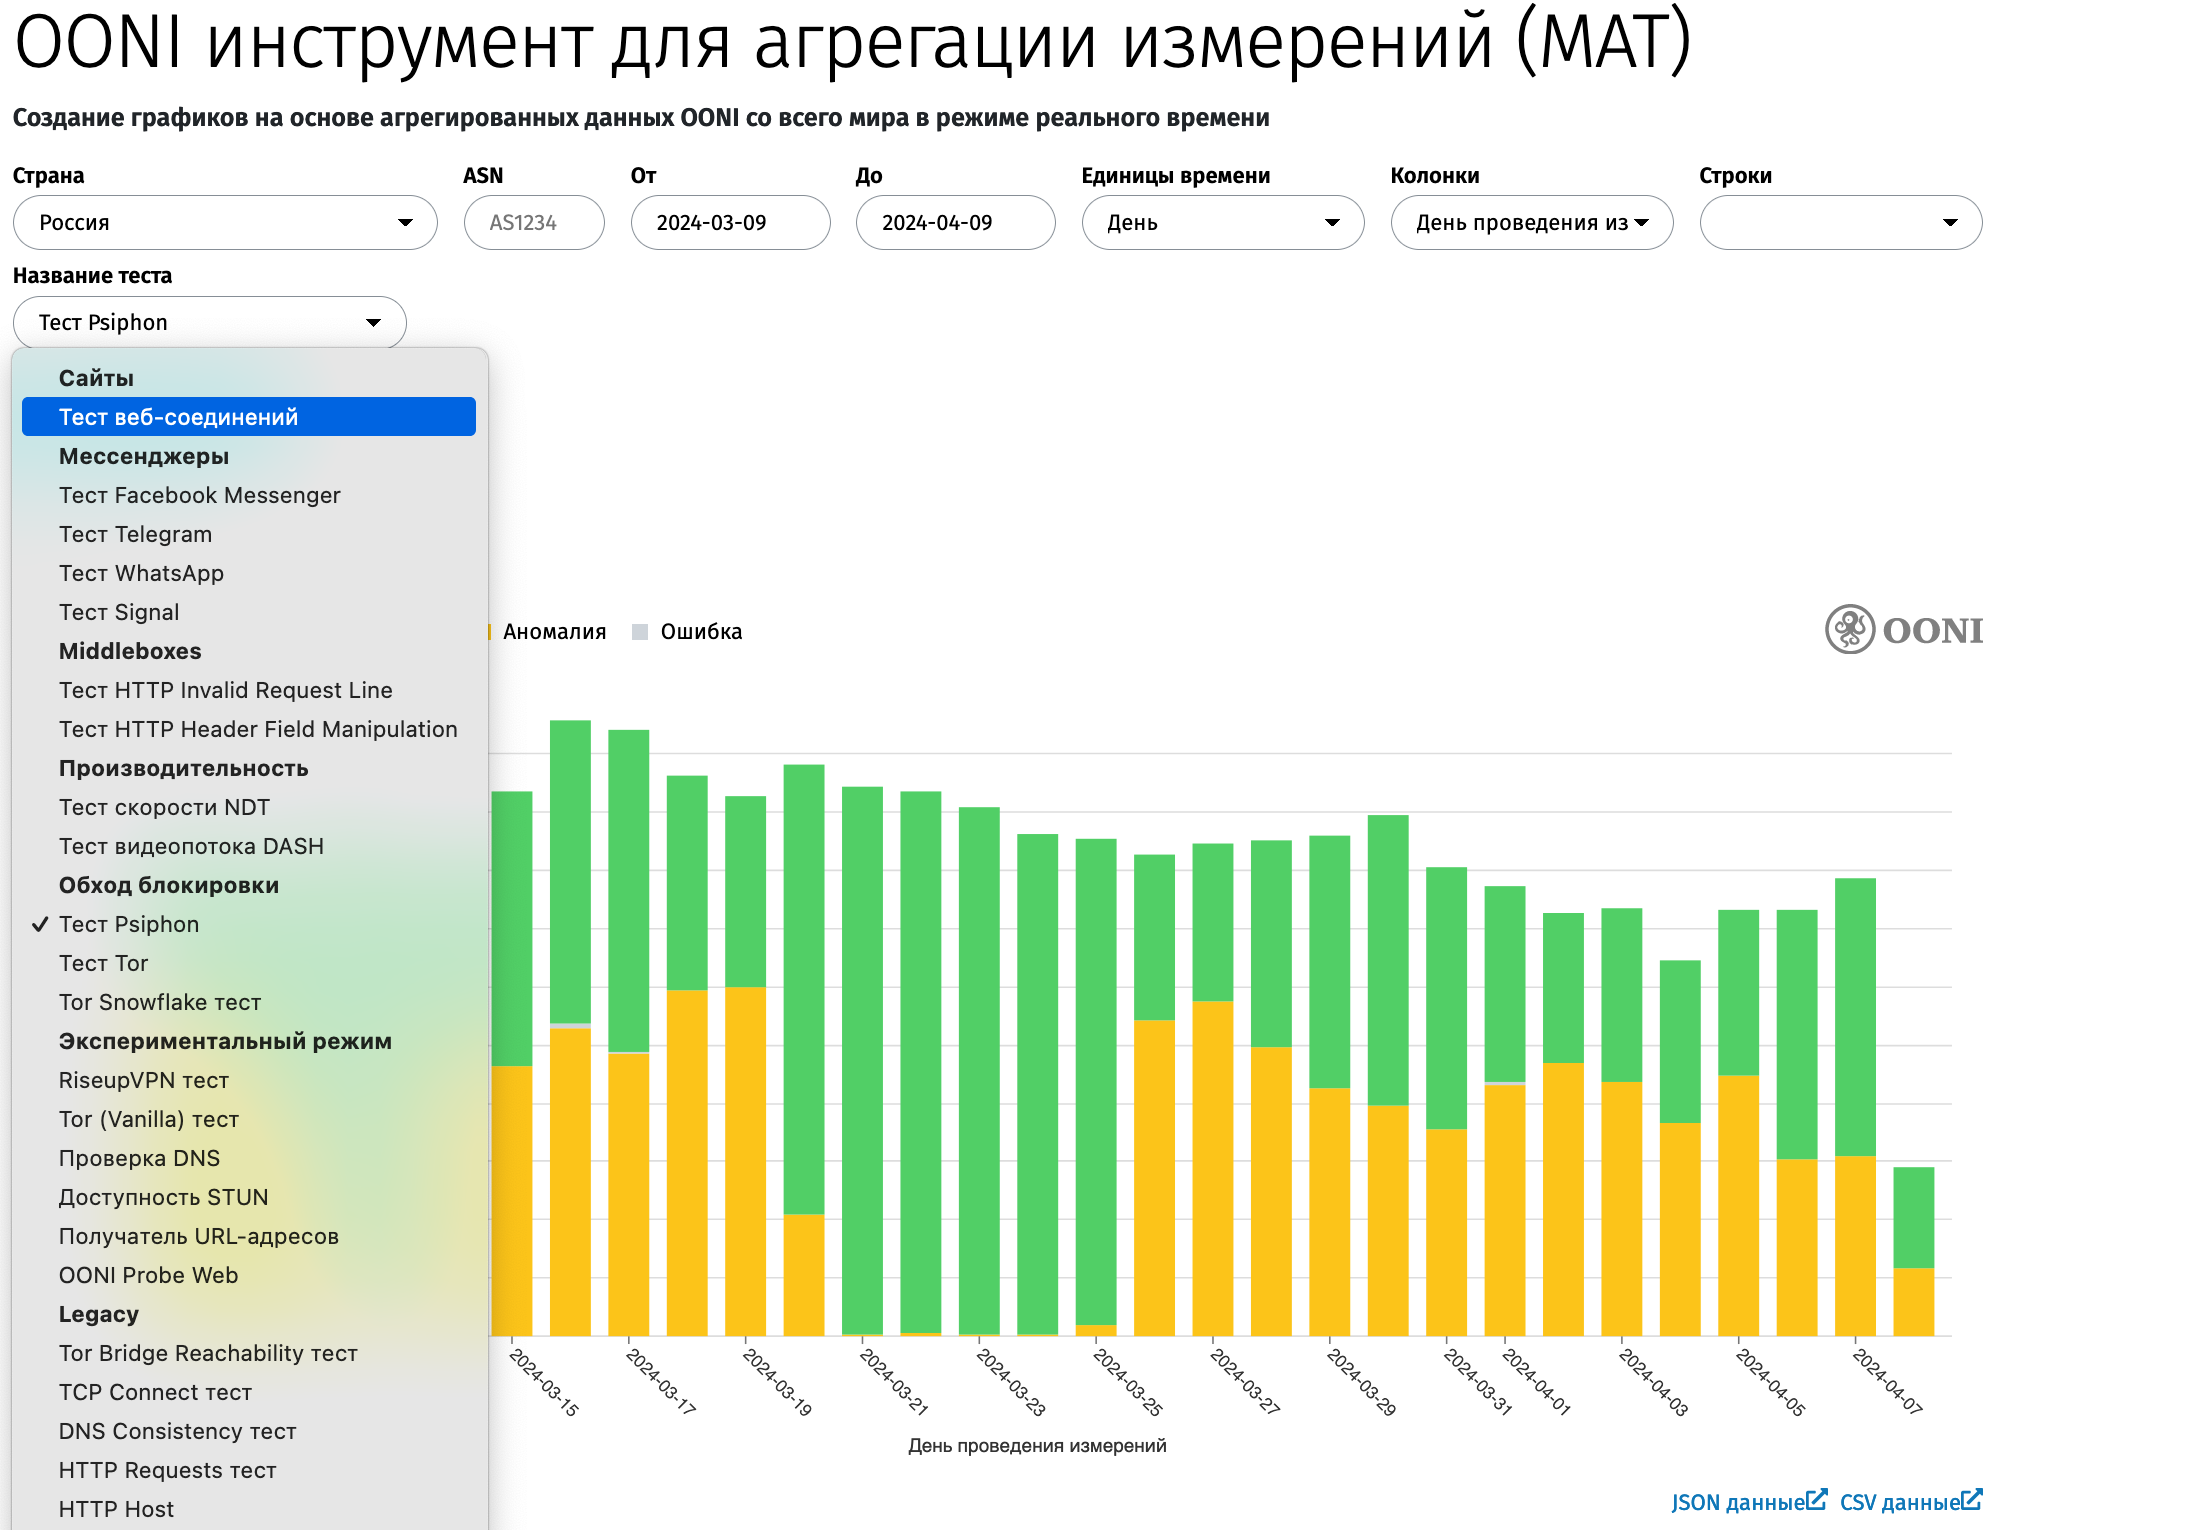  График доступности сервиса Psiphon в России по данным OONI. Каждая точка - отдельное измерение. Зеленый - успешное подключение, желтый - неудачное.